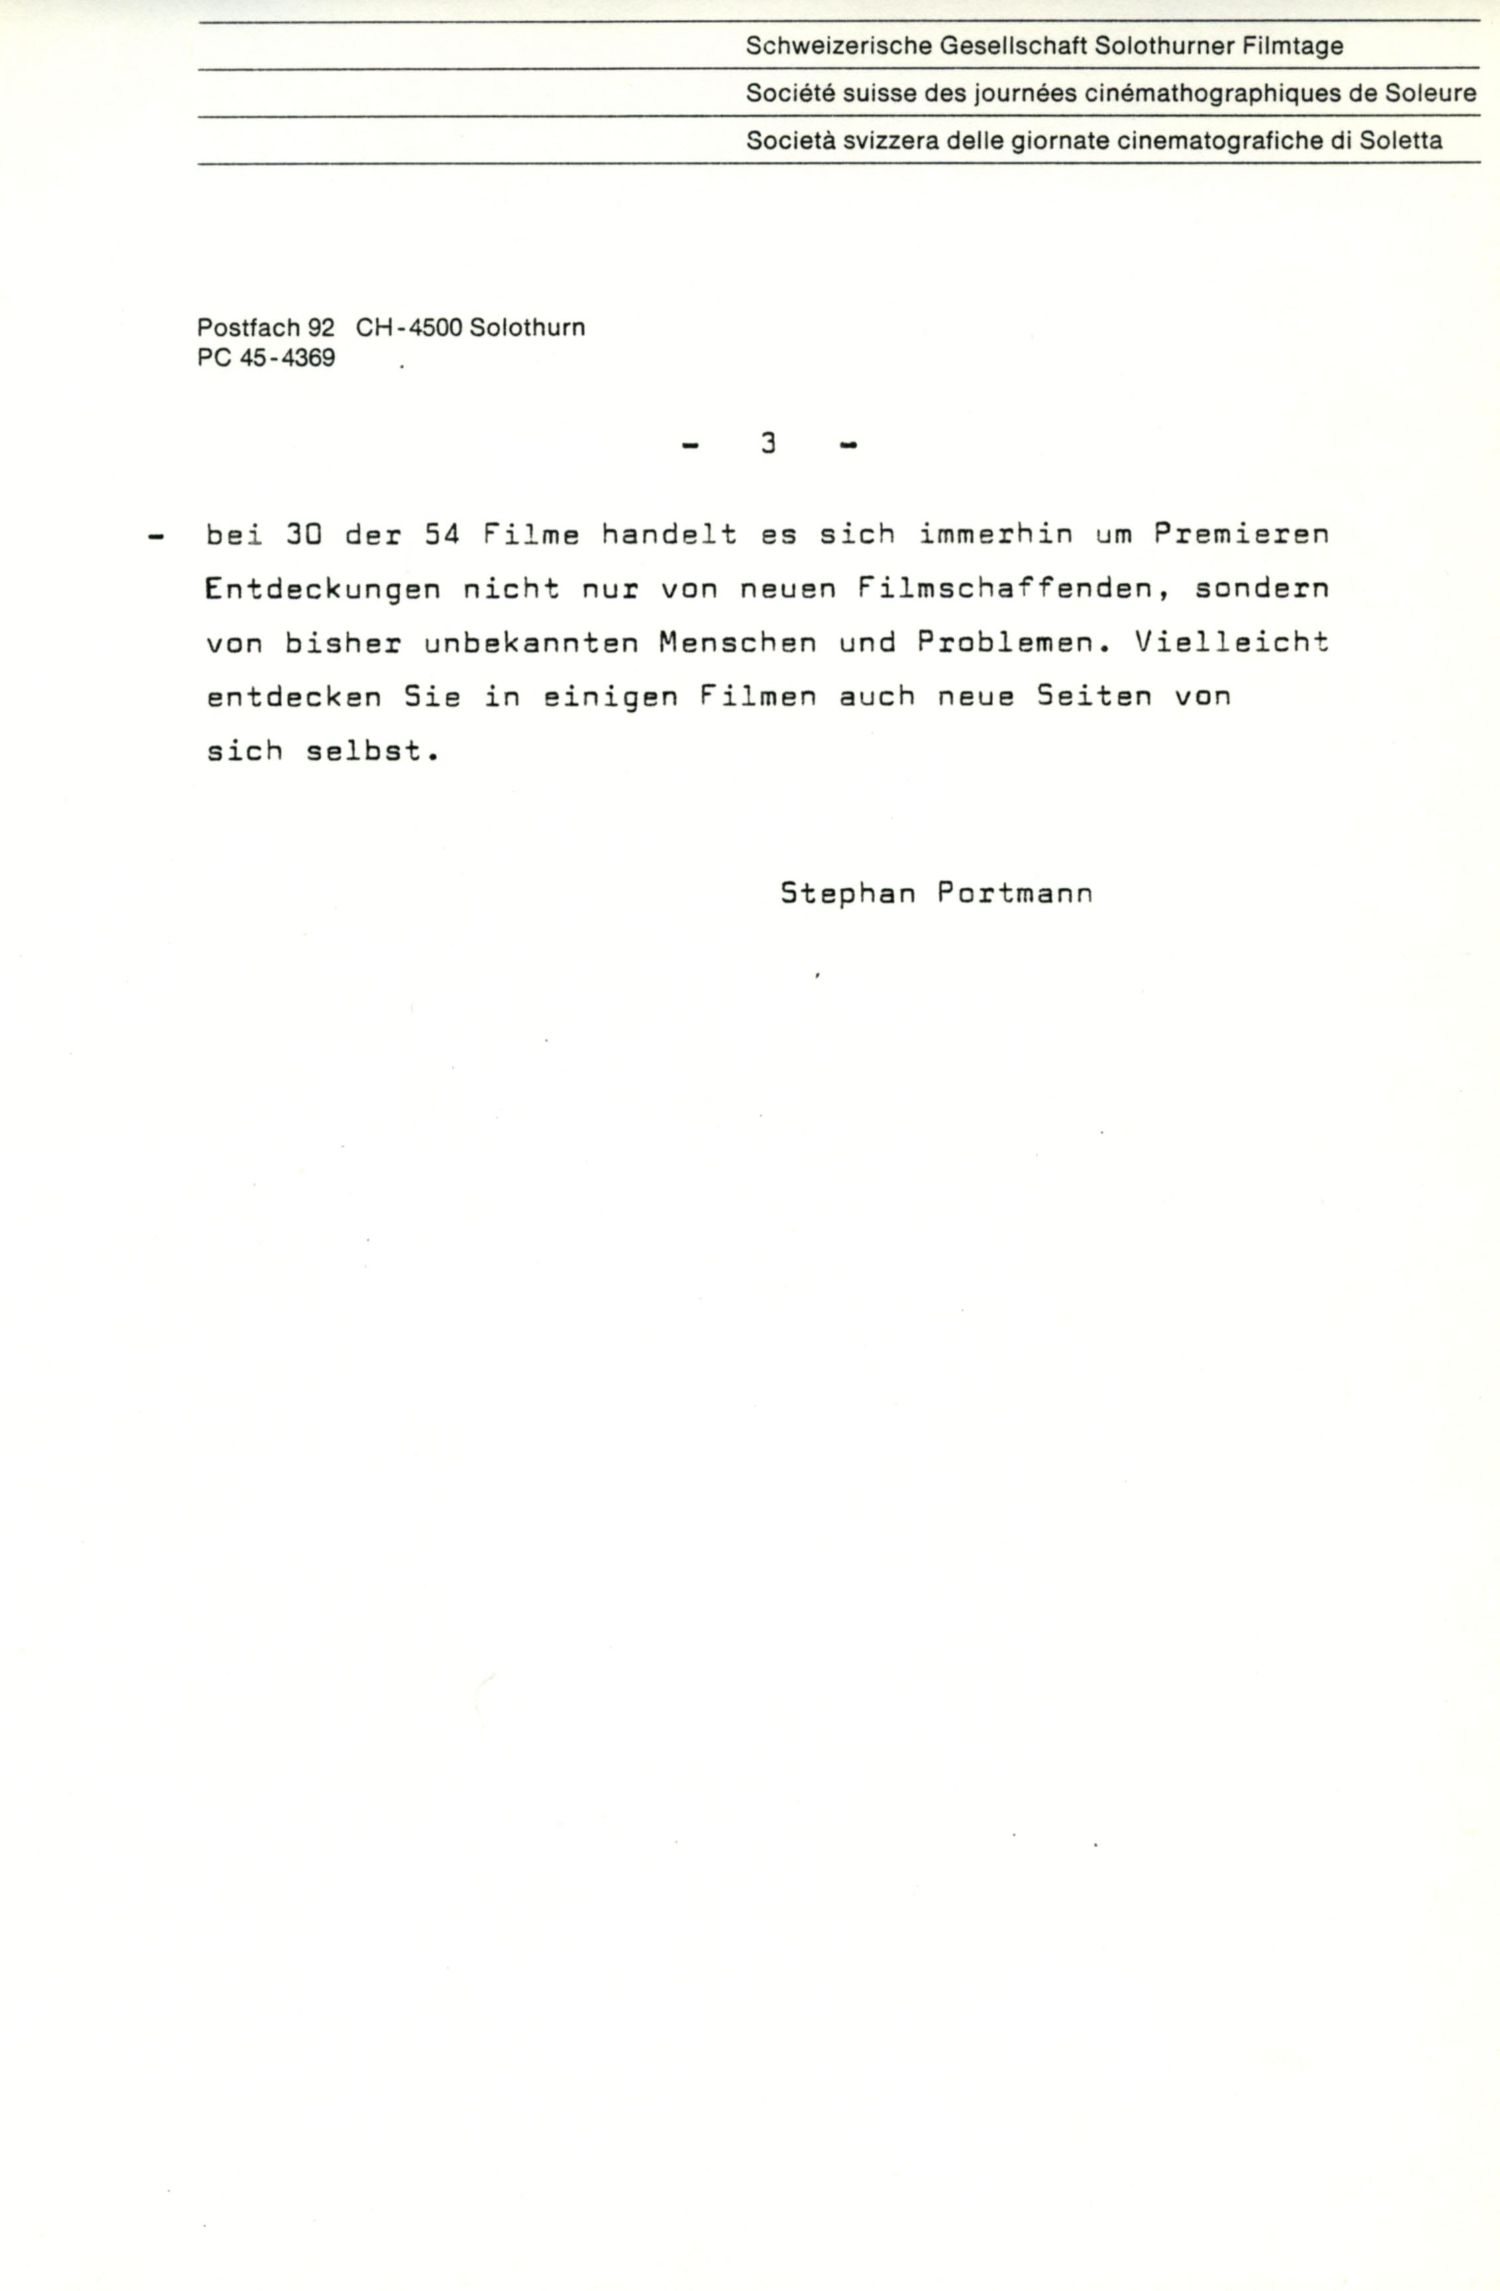 En vue de l'ouverture des Journées de Soleure, 1980, p.3